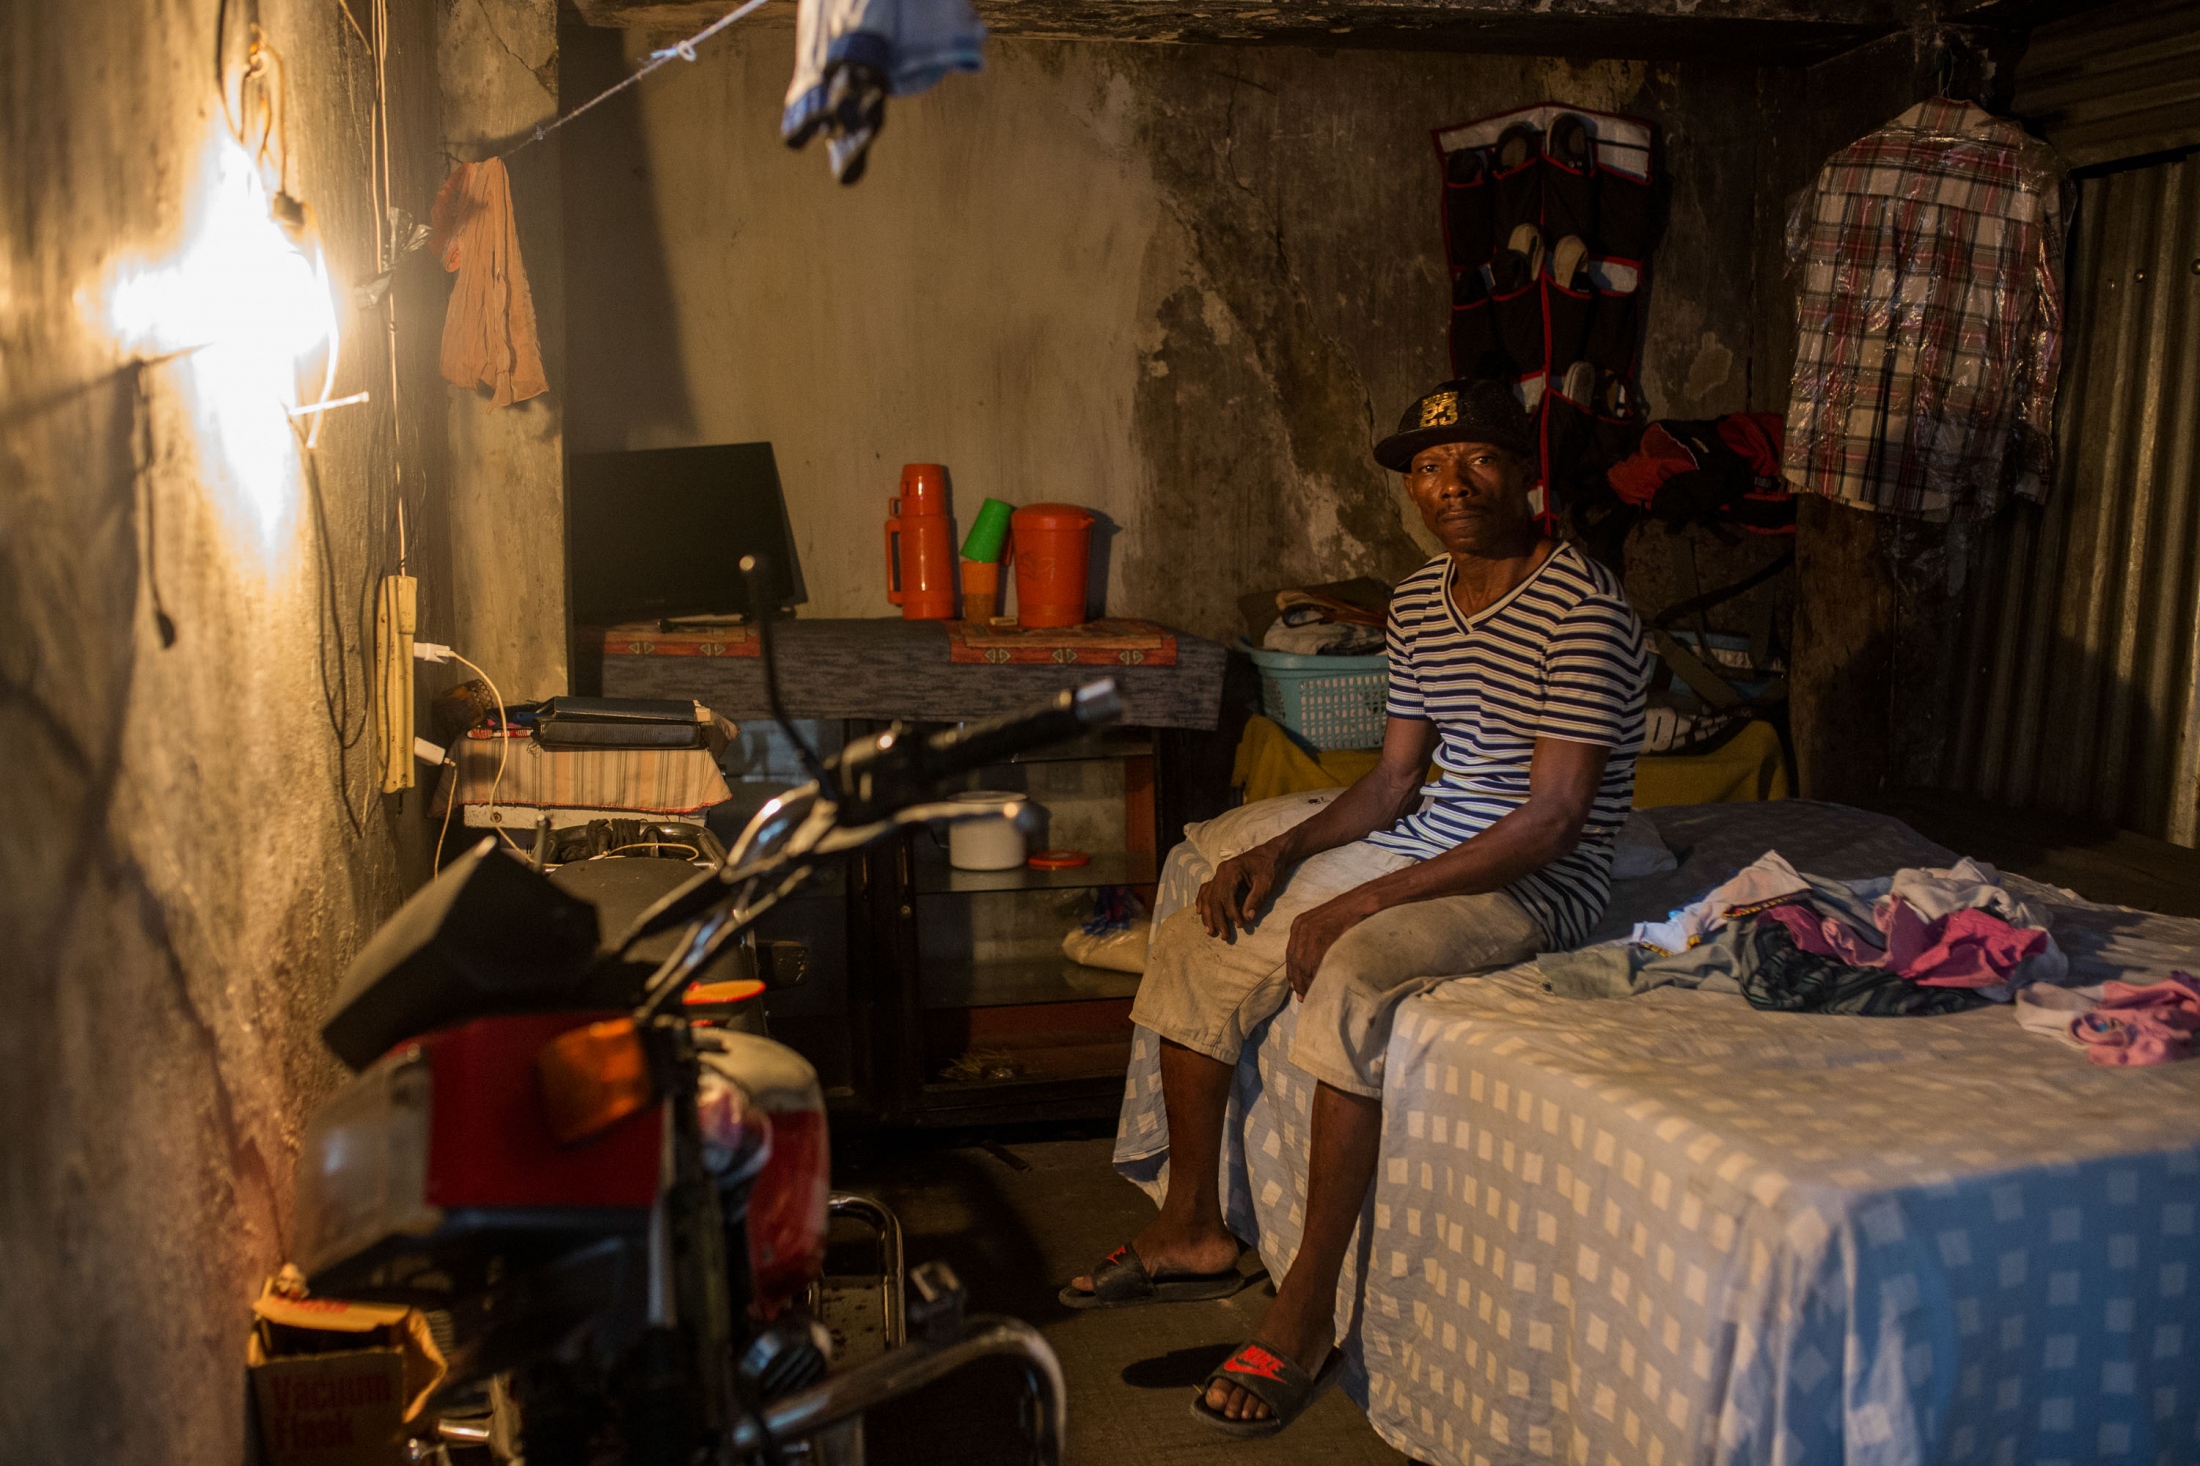 Port-au-Prince squatters - 